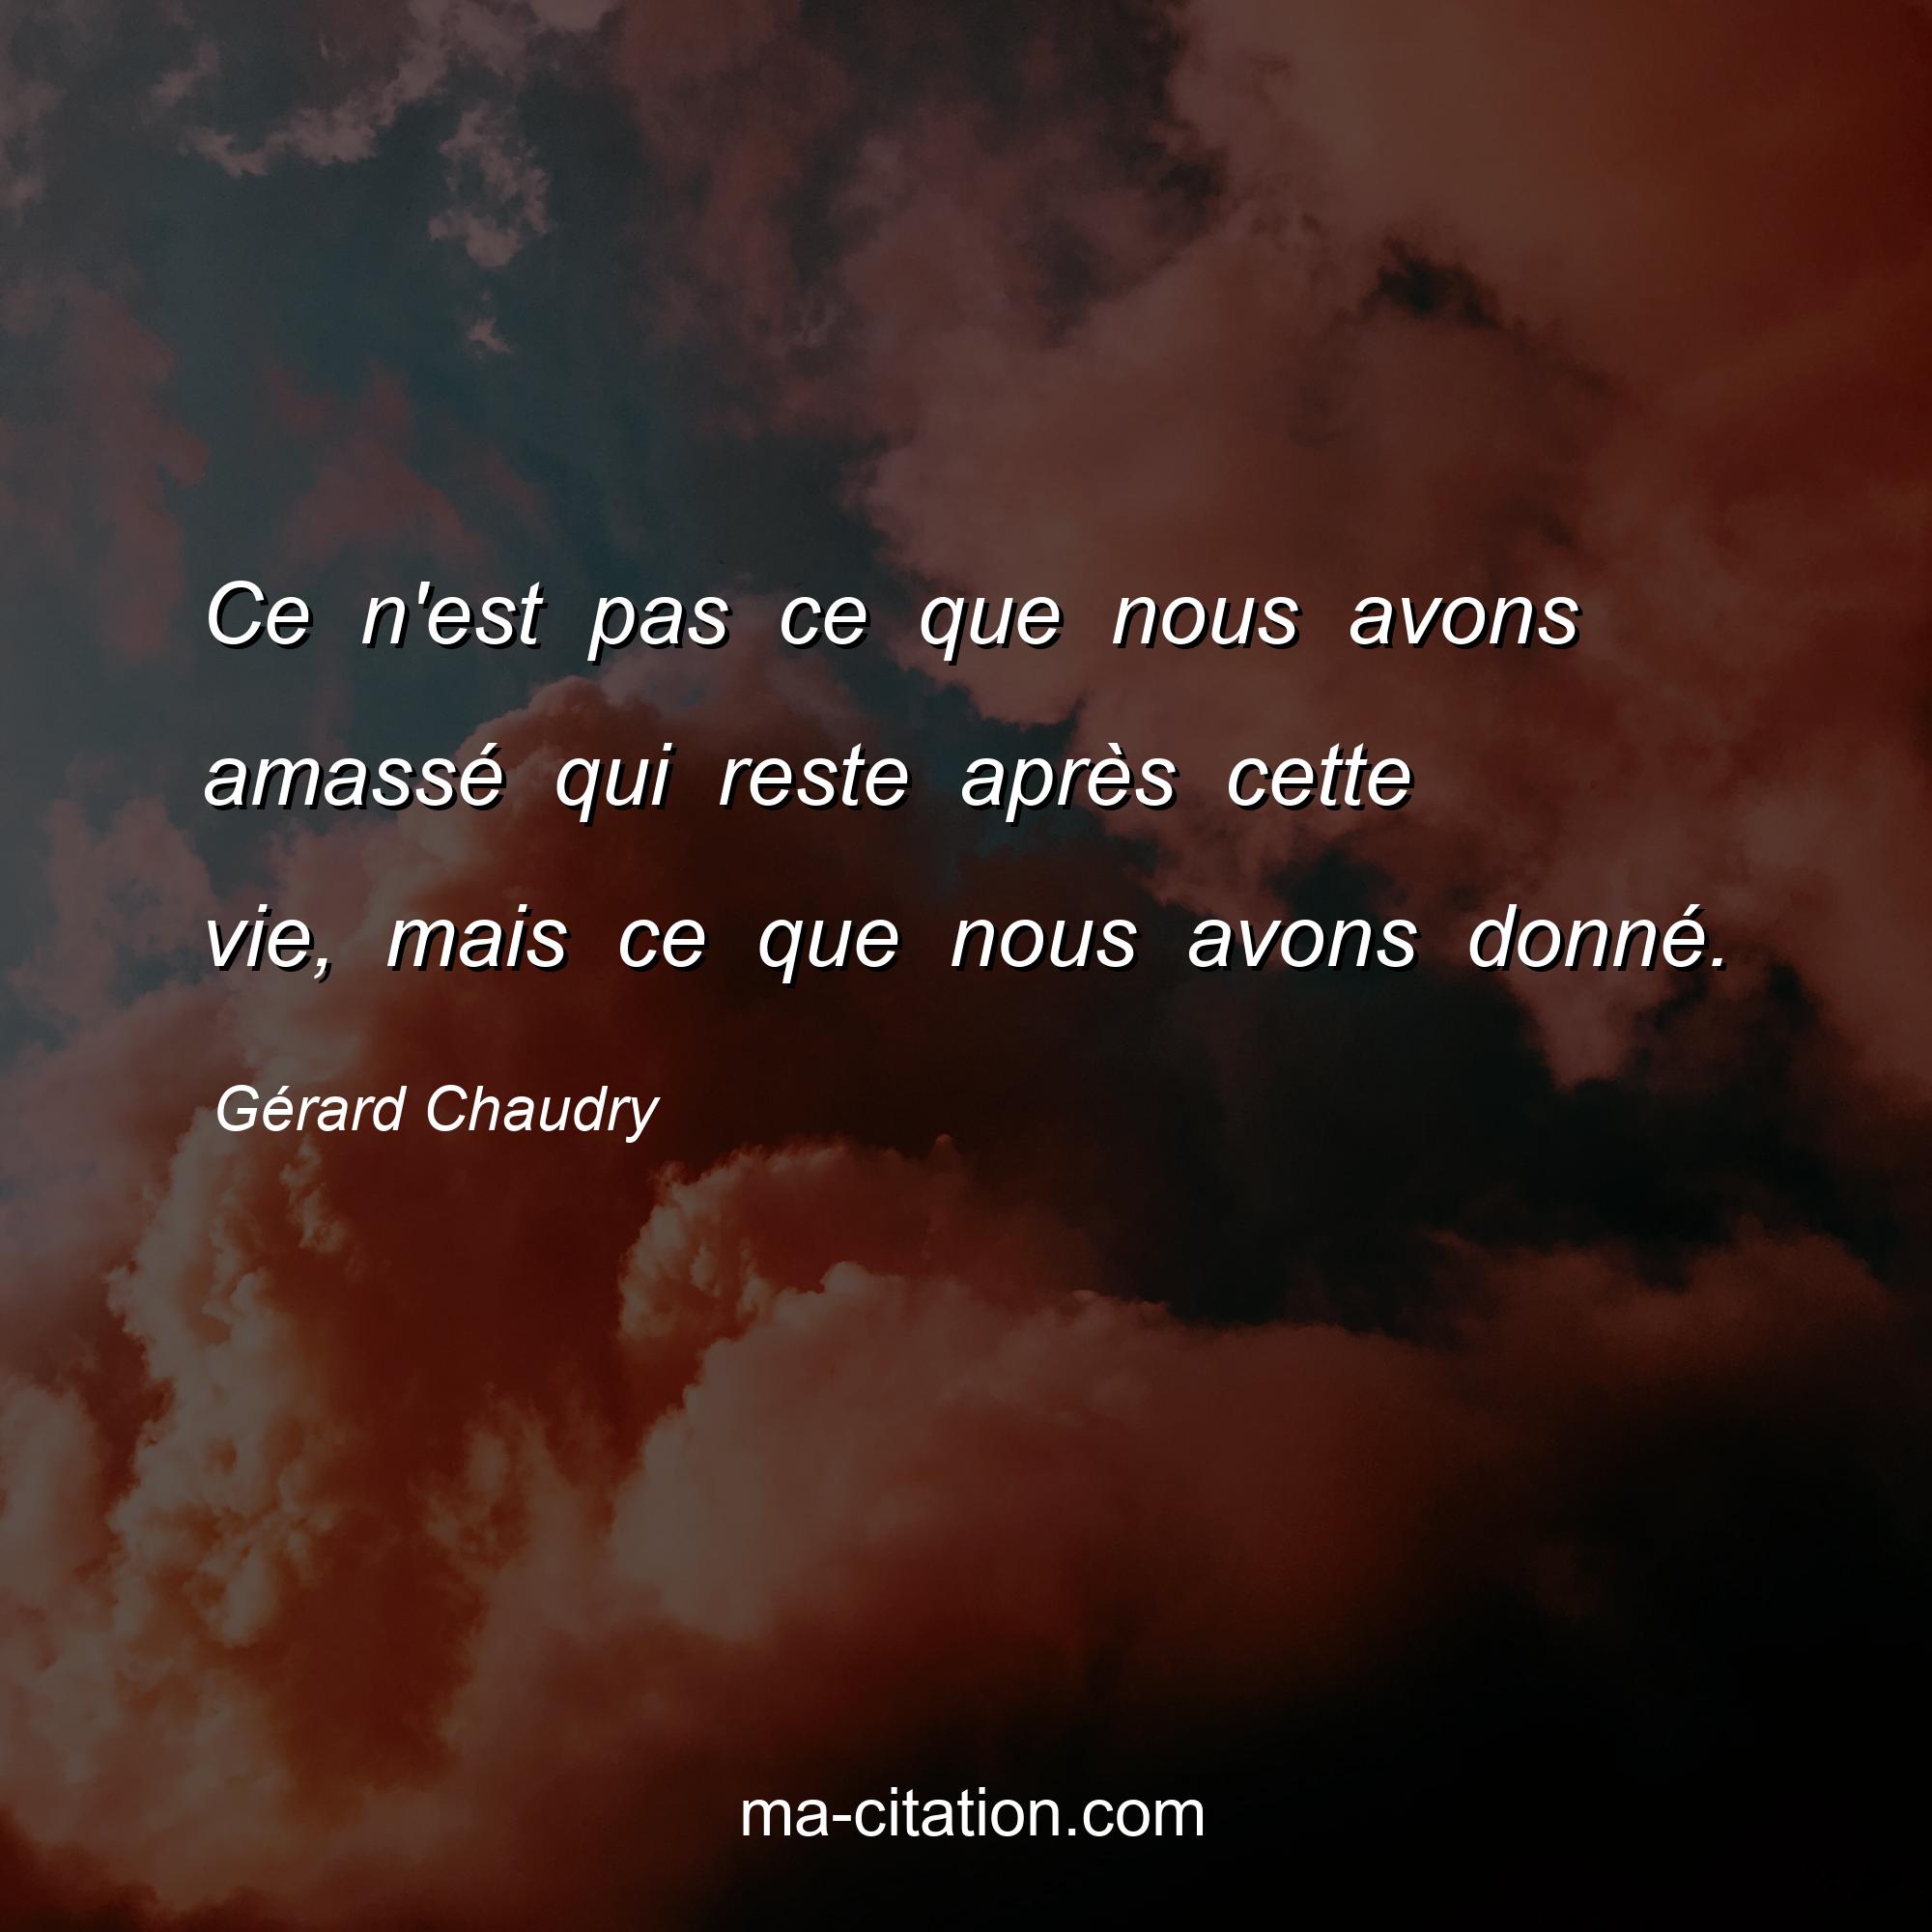 Gérard Chaudry : Ce n'est pas ce que nous avons amassé qui reste après cette vie, mais ce que nous avons donné.